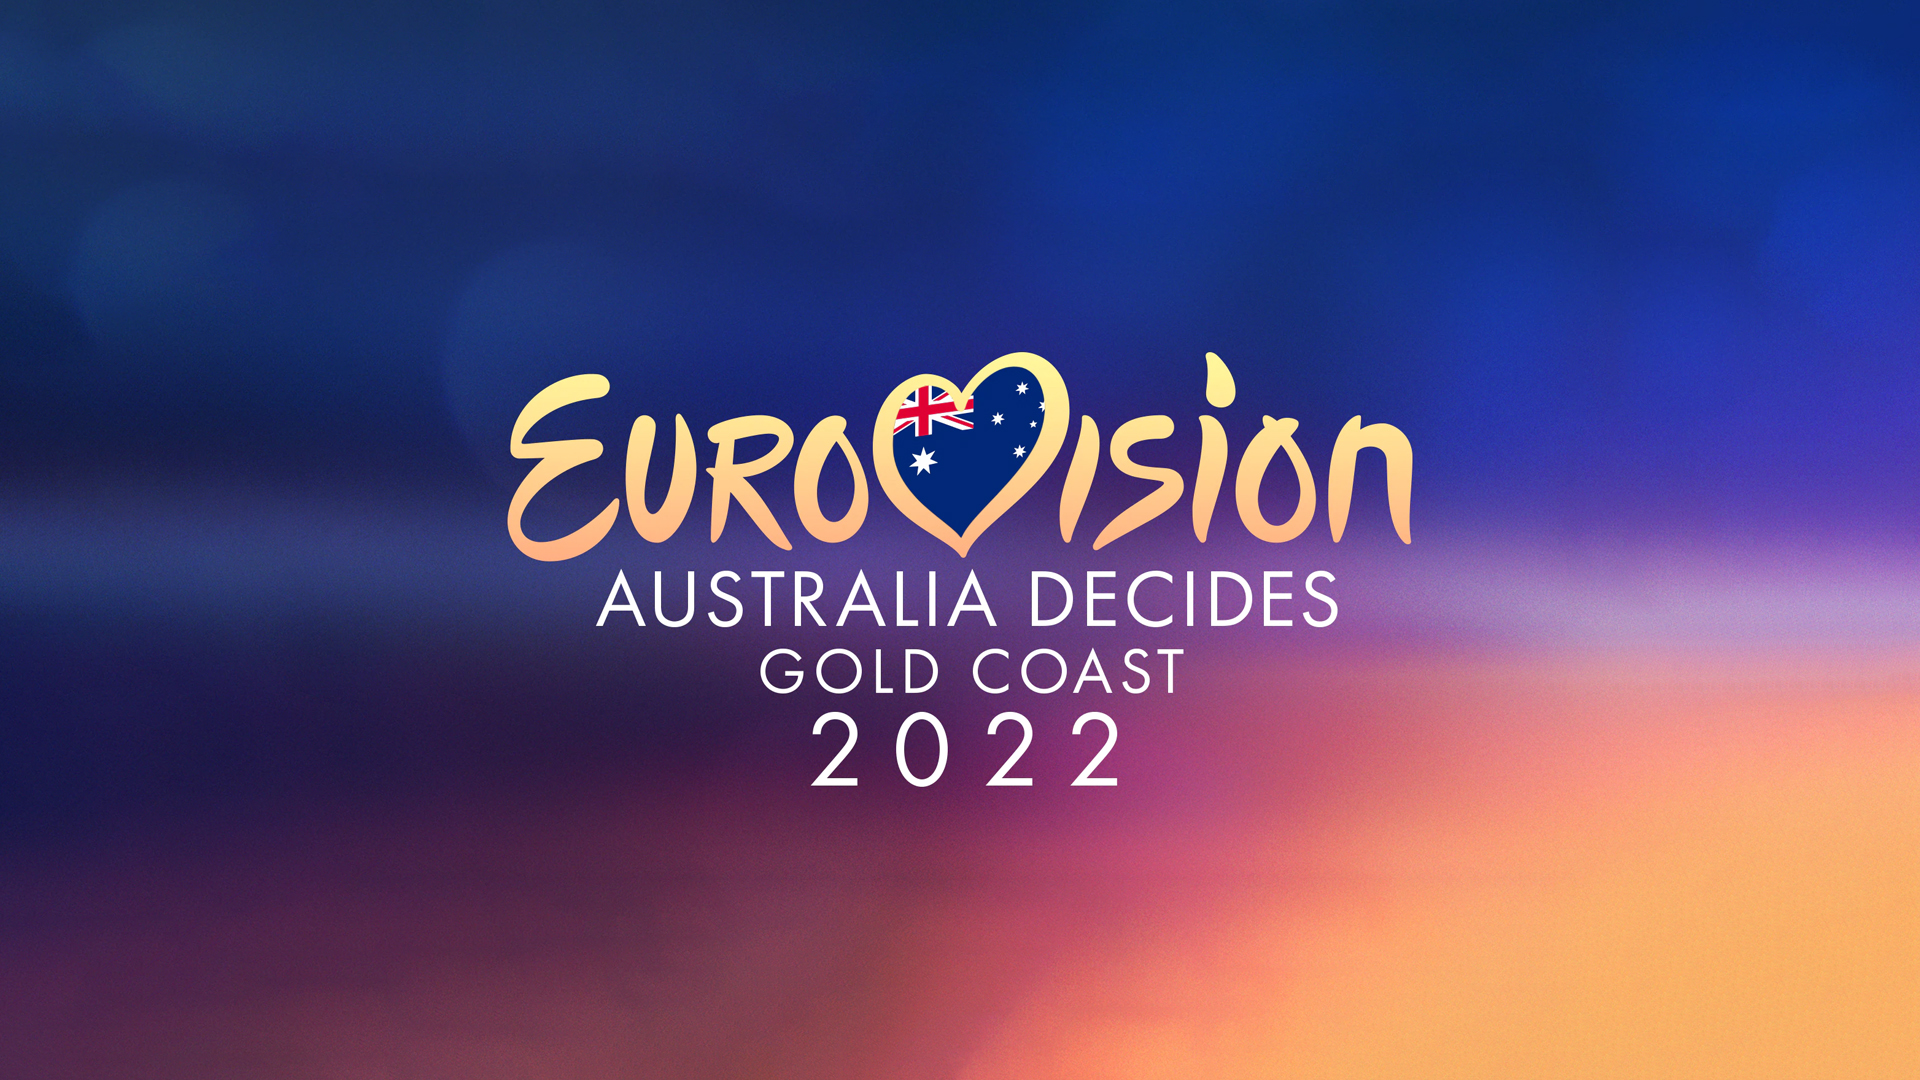 Australia: Tonight Australia decides who their representative is going to be